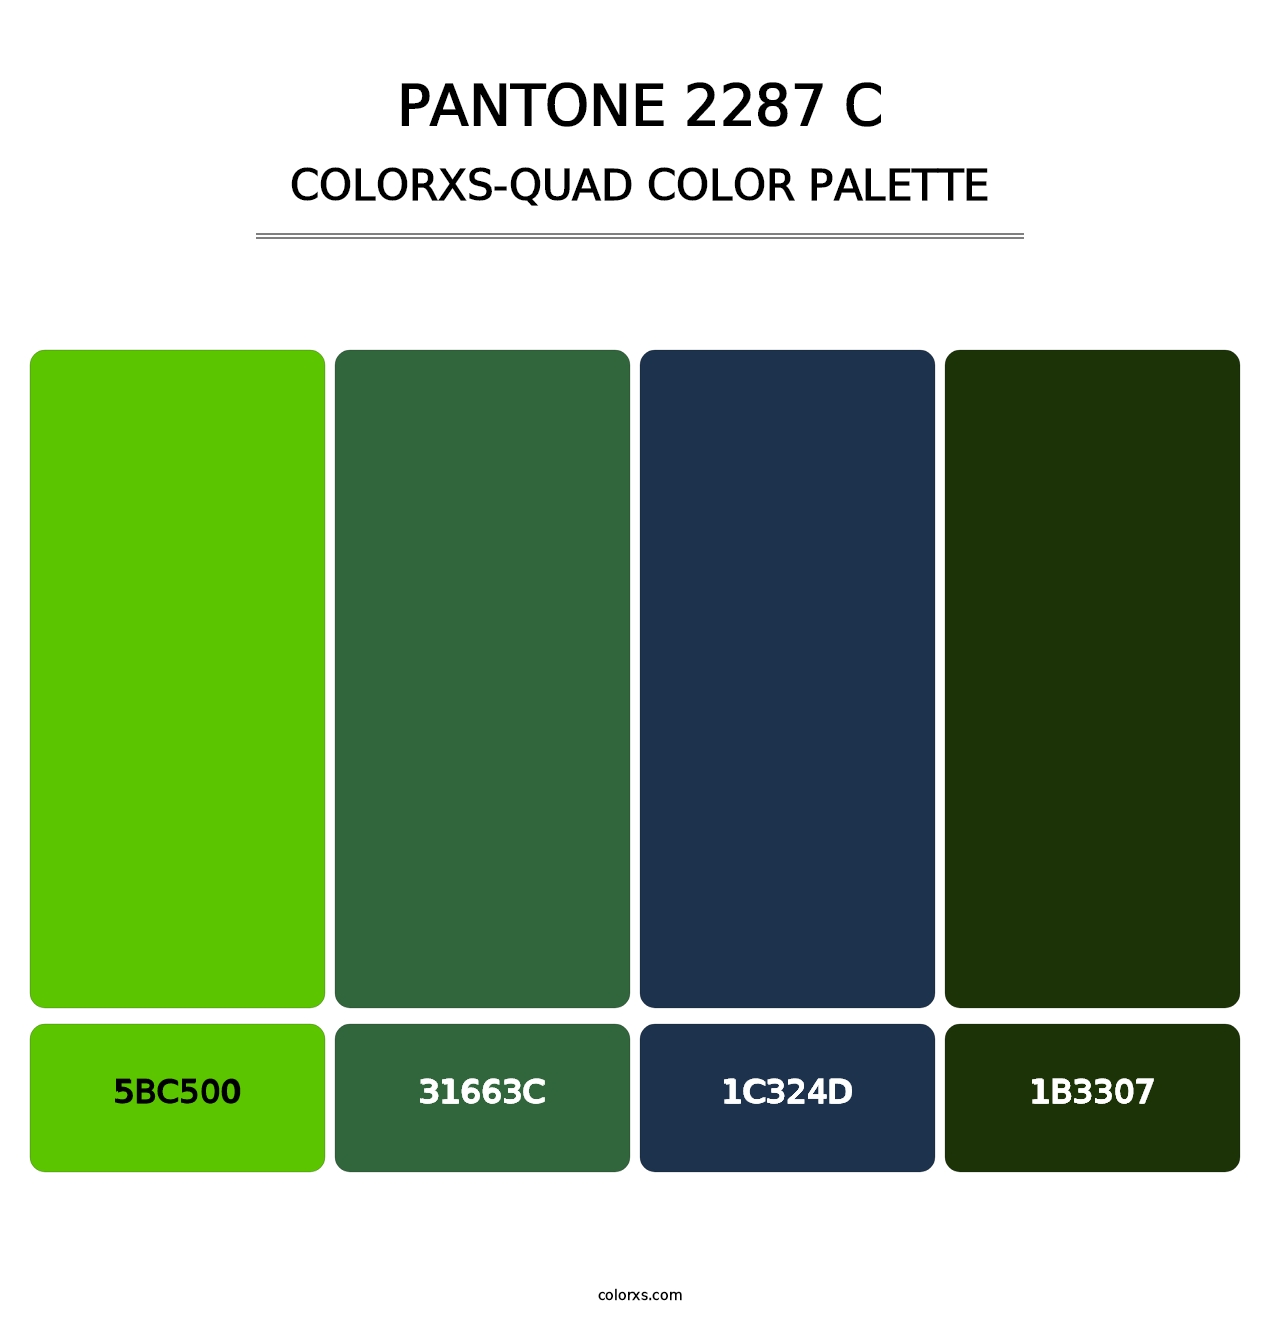 PANTONE 2287 C - Colorxs Quad Palette